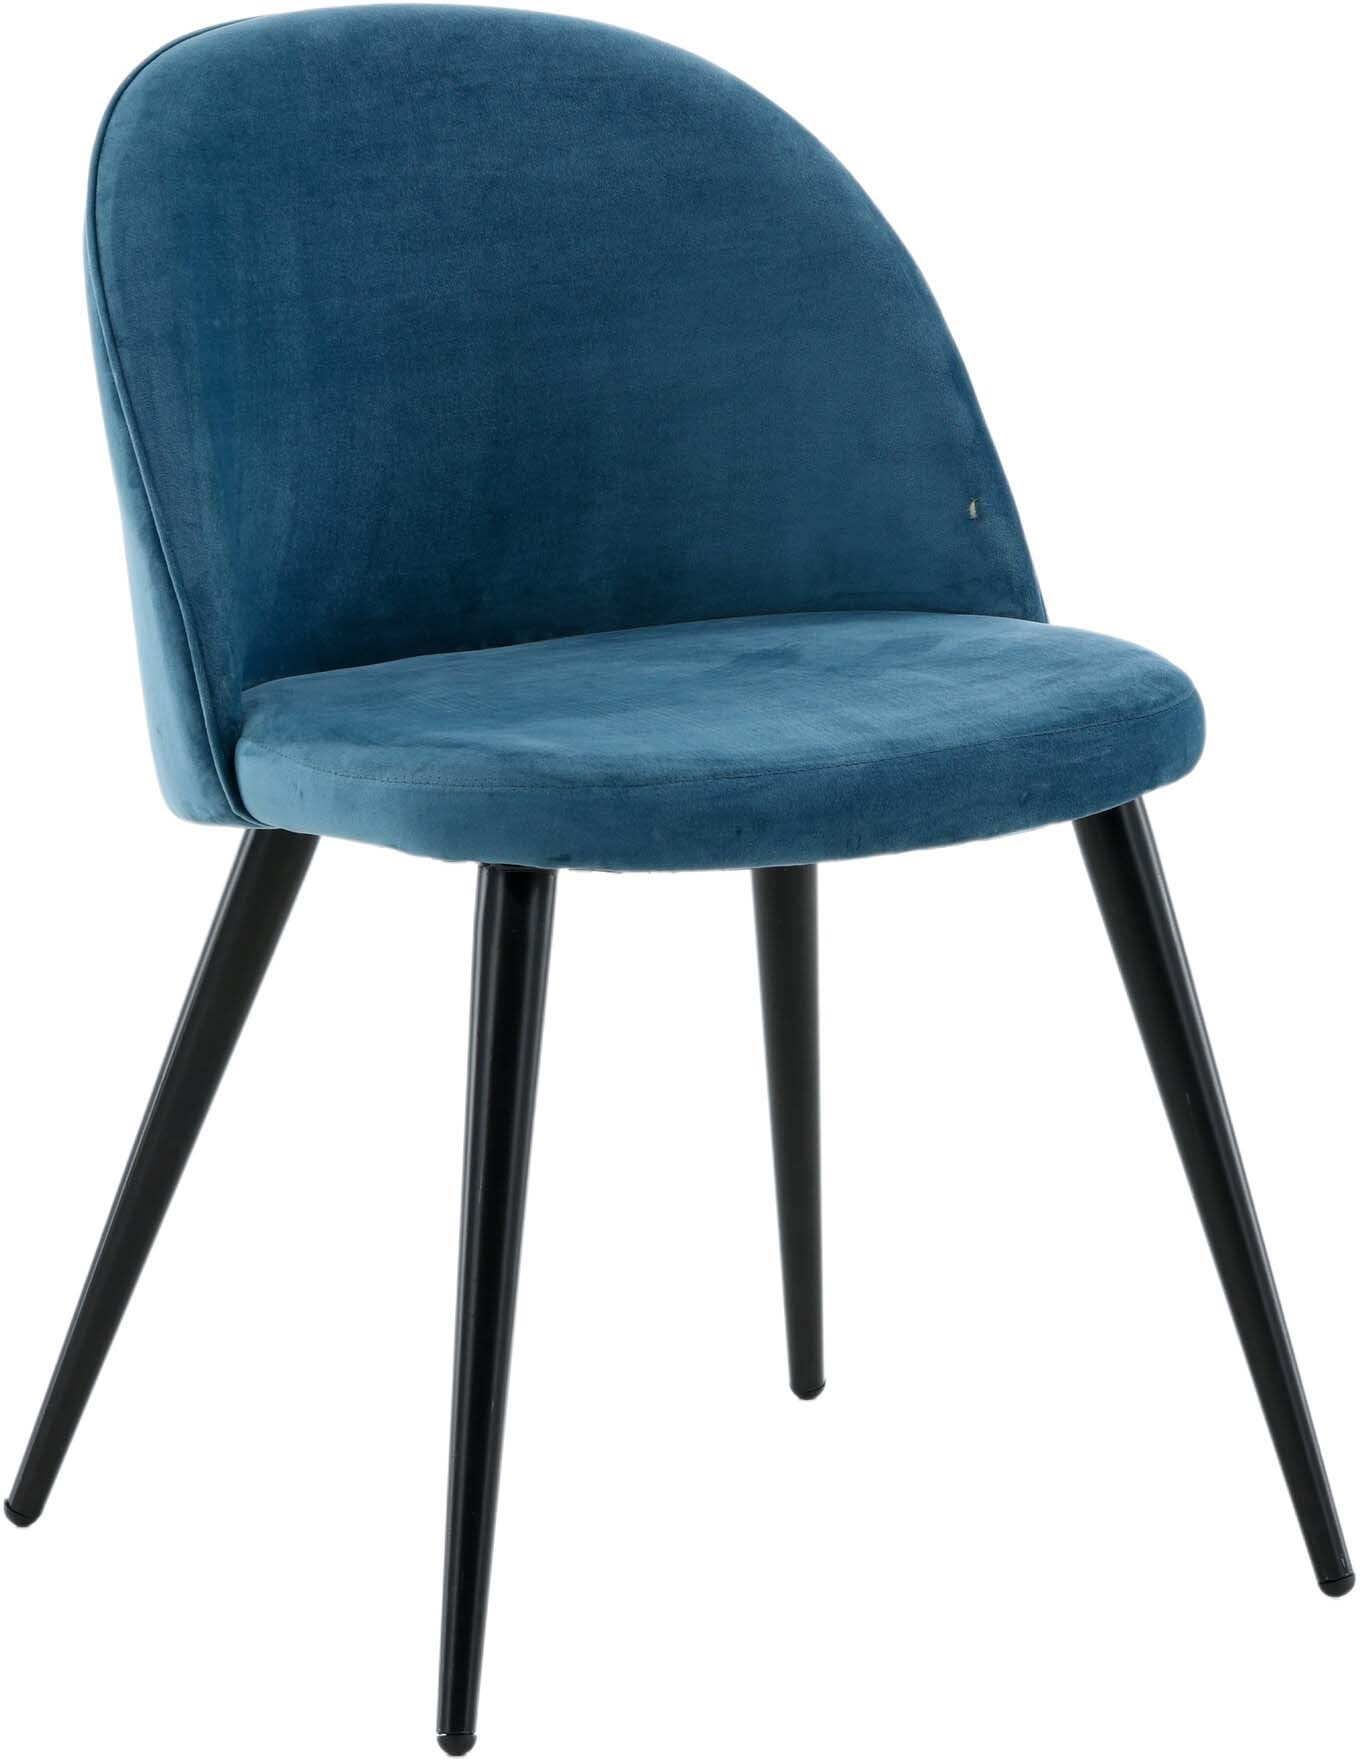 Velvet Matstol Stuhl in Blau / Schwarz präsentiert im Onlineshop von KAQTU Design AG. Schalenstuhl ist von Venture Home